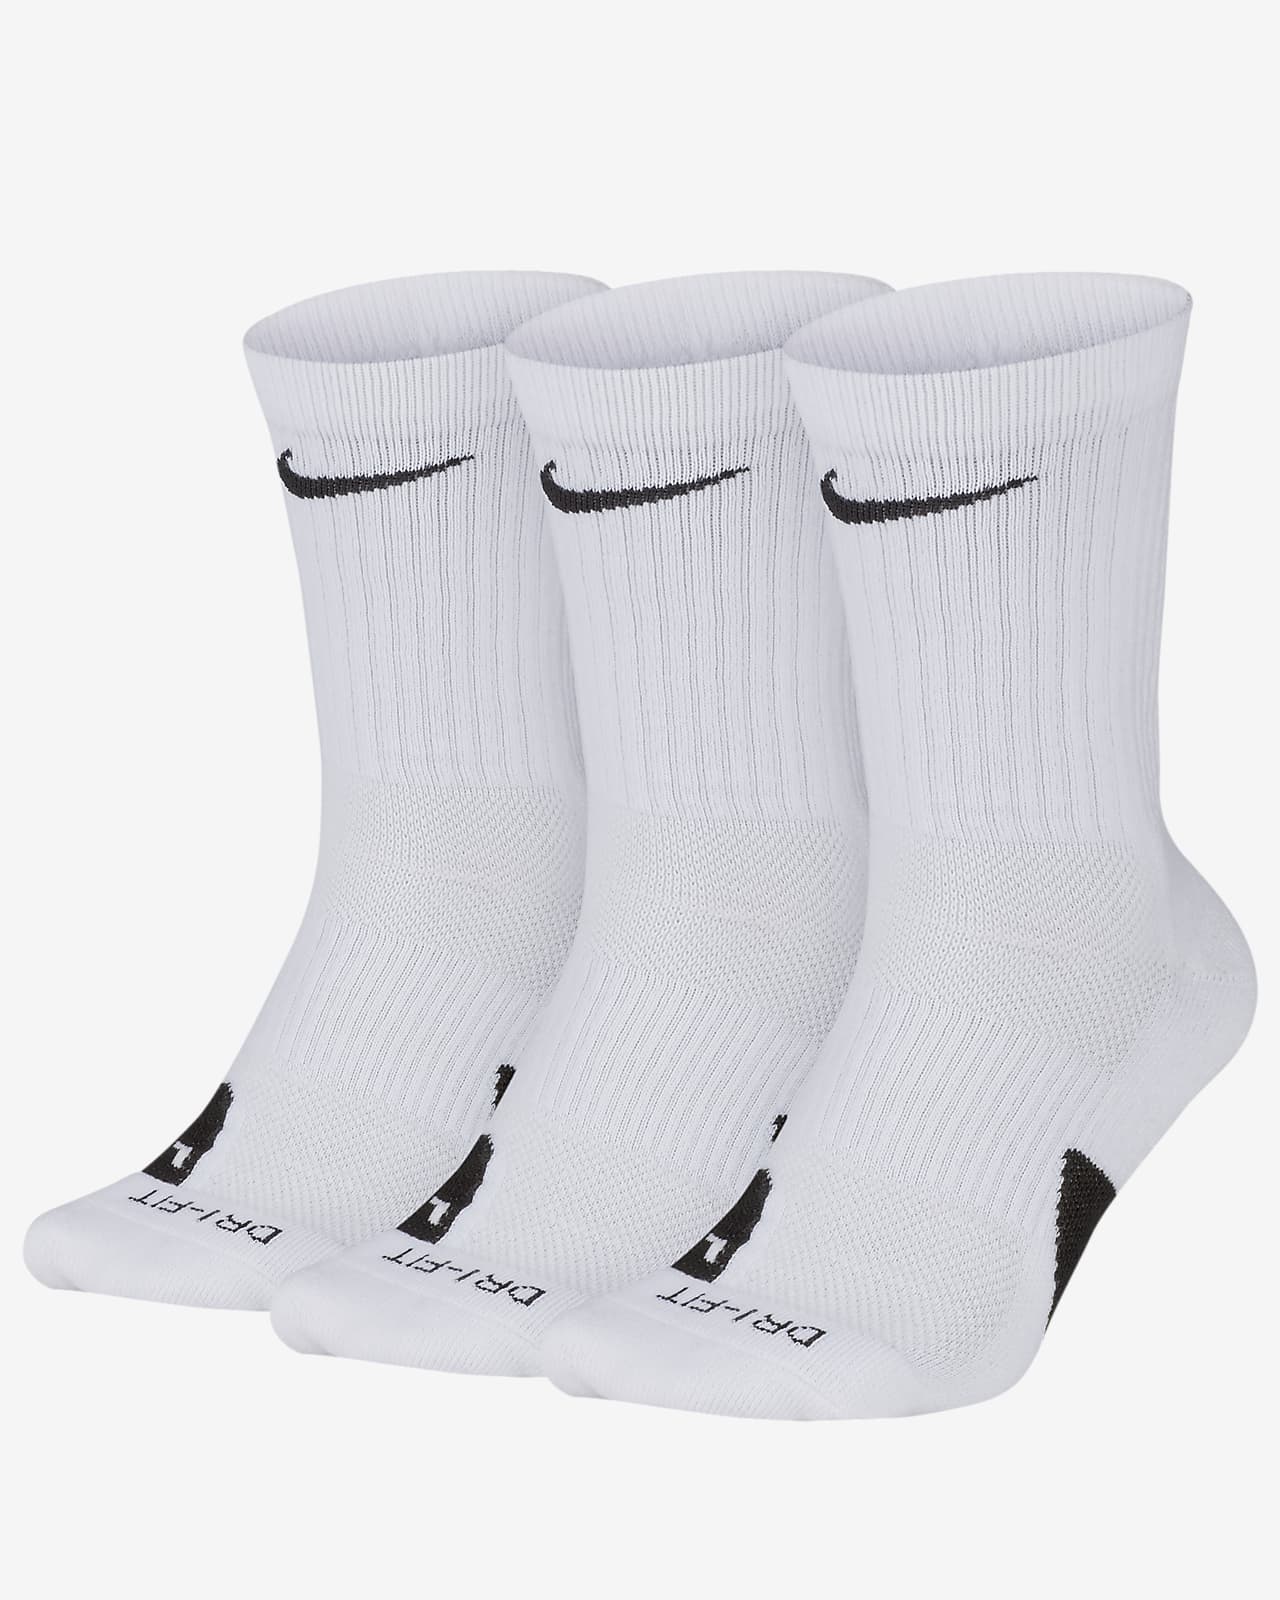 Calcetines largos de básquetbol Nike Elite (3 pares). Nike.com